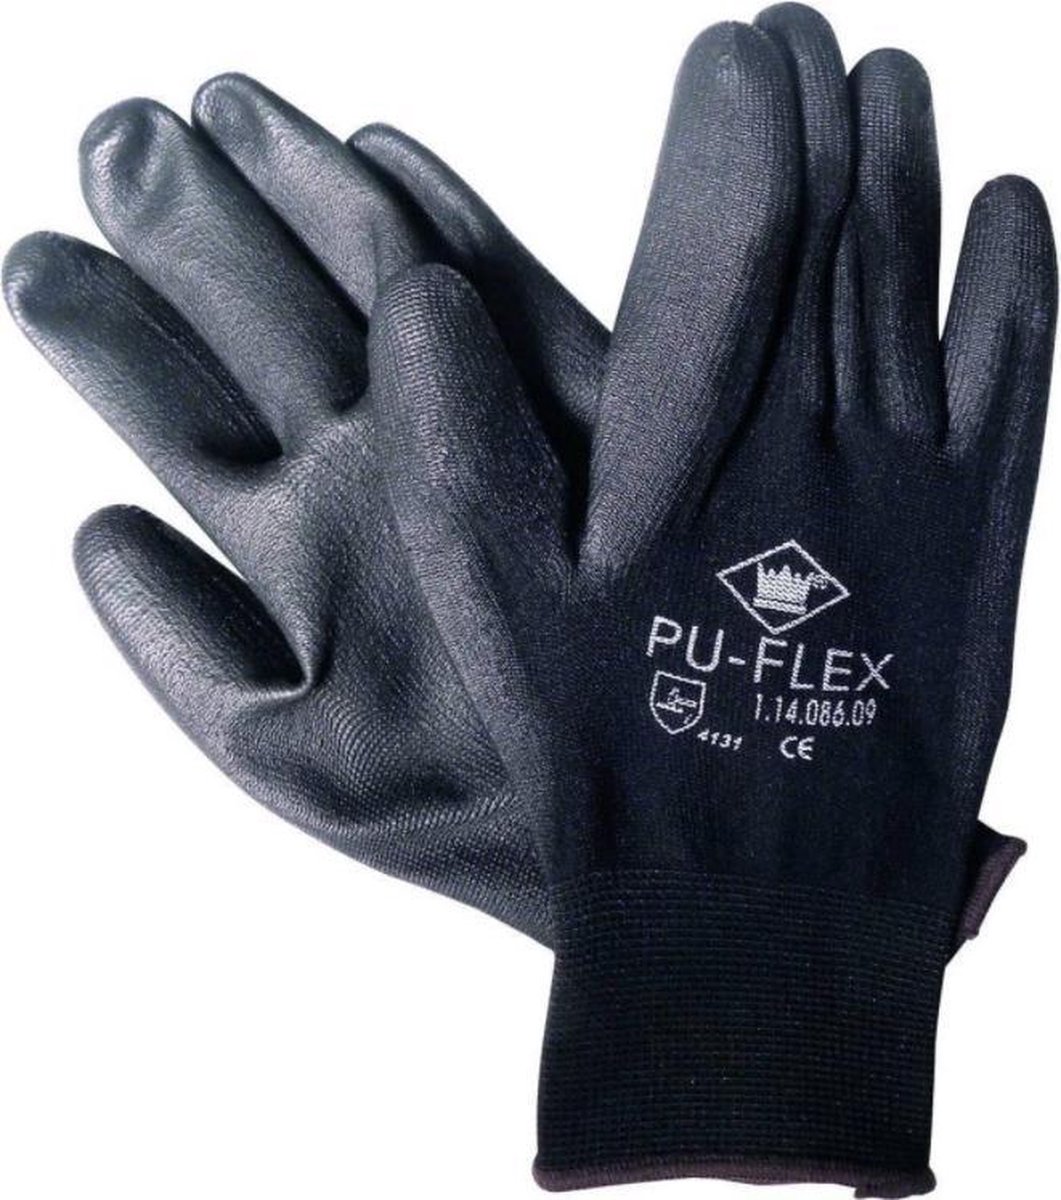 PU-Flex handschoen - zwart - maat XXL (11) - M-Safe - (set a 12 paar)